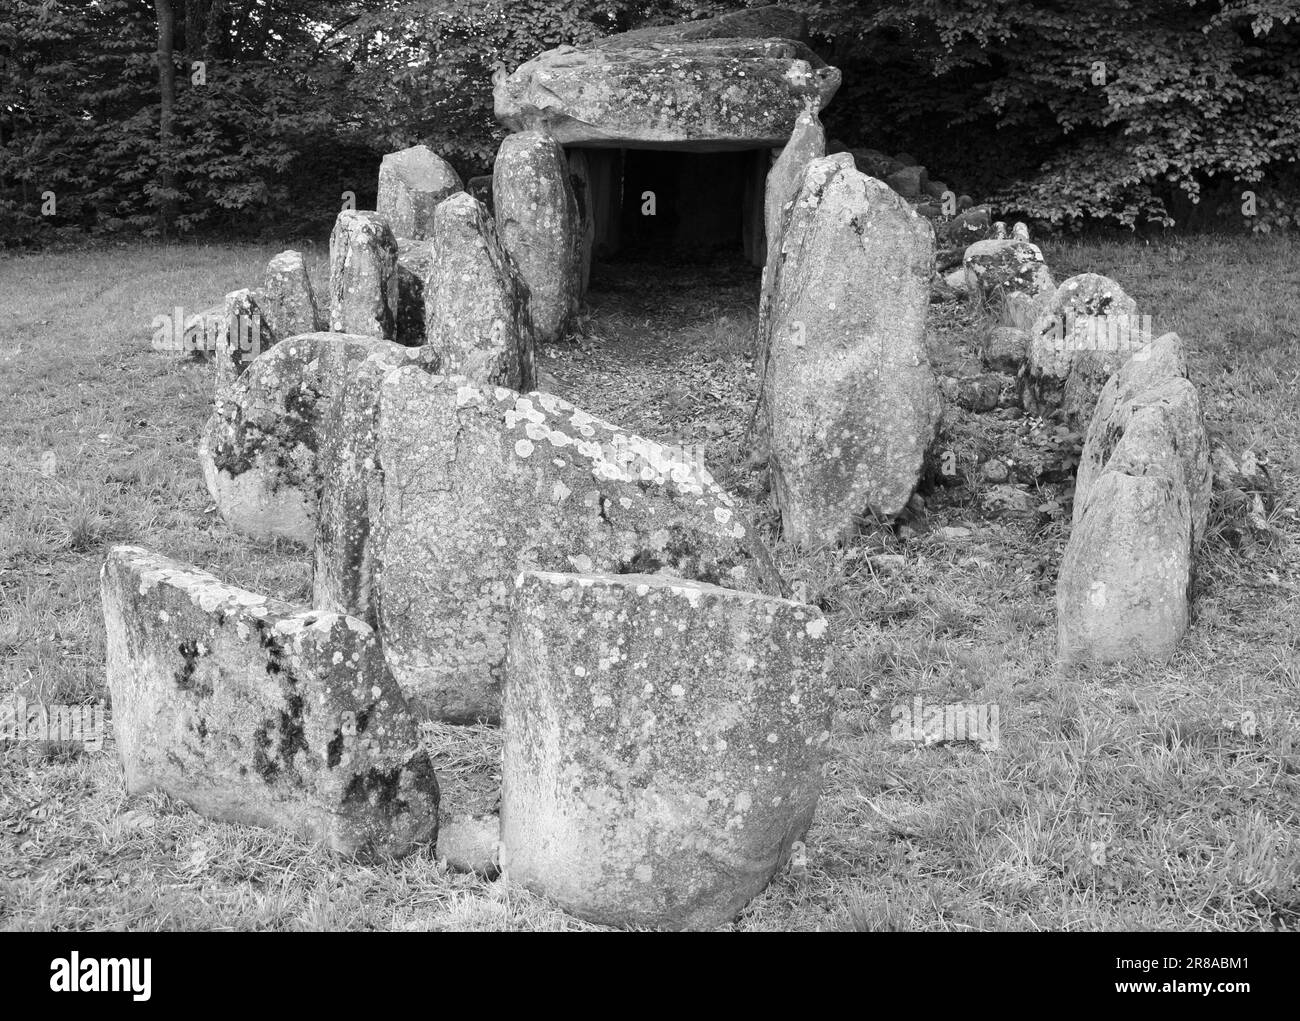 A view of Les Megalithes at Passais la Conception, Domfront en Poiraie, Normandy, France, Europe Stock Photo